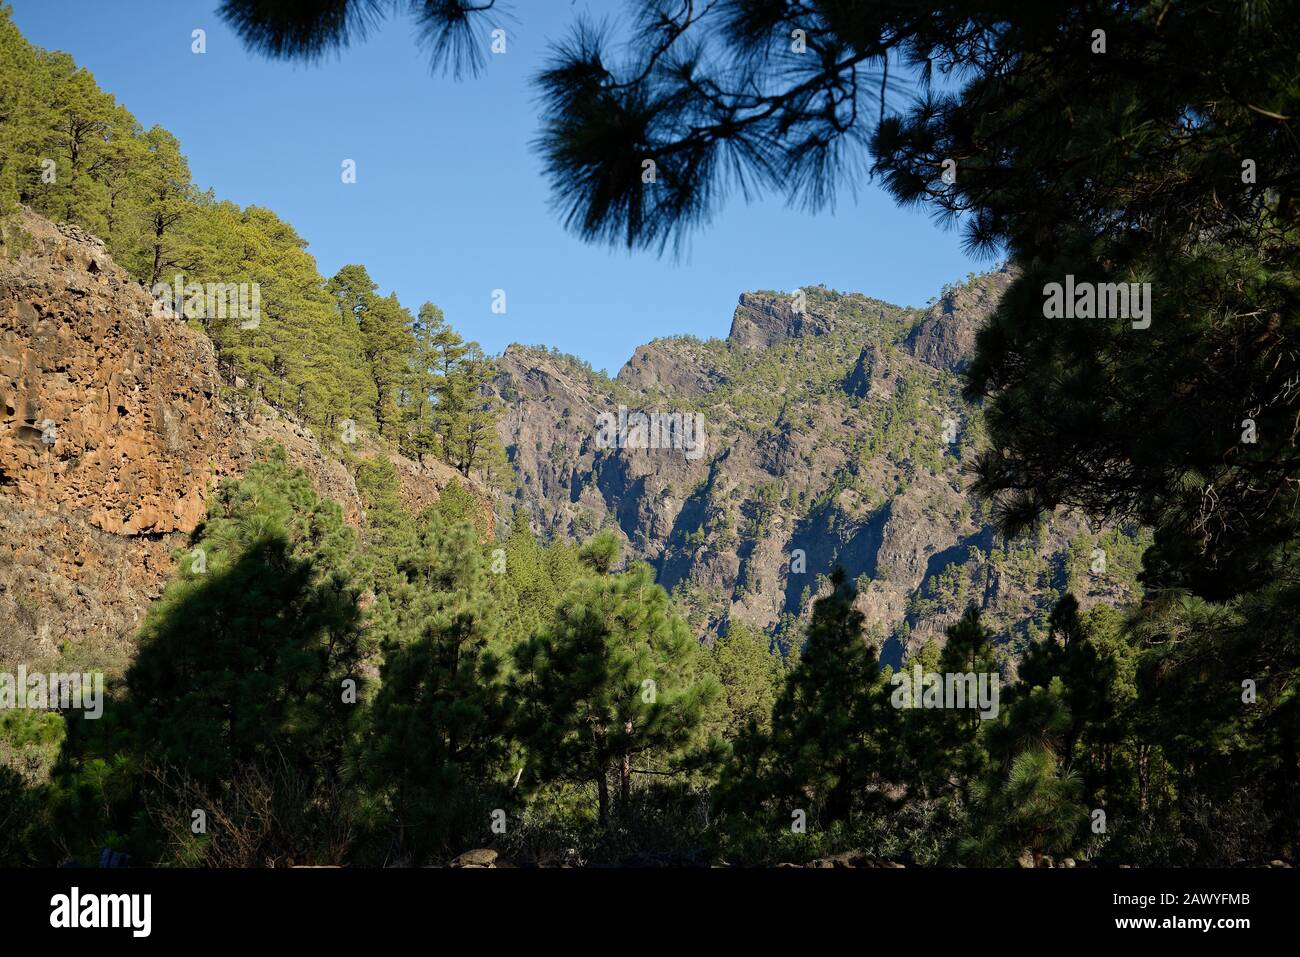 Kiefernwälder und Felsen der Caldera de Taburiente, Insel La Palma, Spanien. Vulkanische Caldera, die jetzt in grünen Kiefernwäldern bedeckt ist. Stockfoto